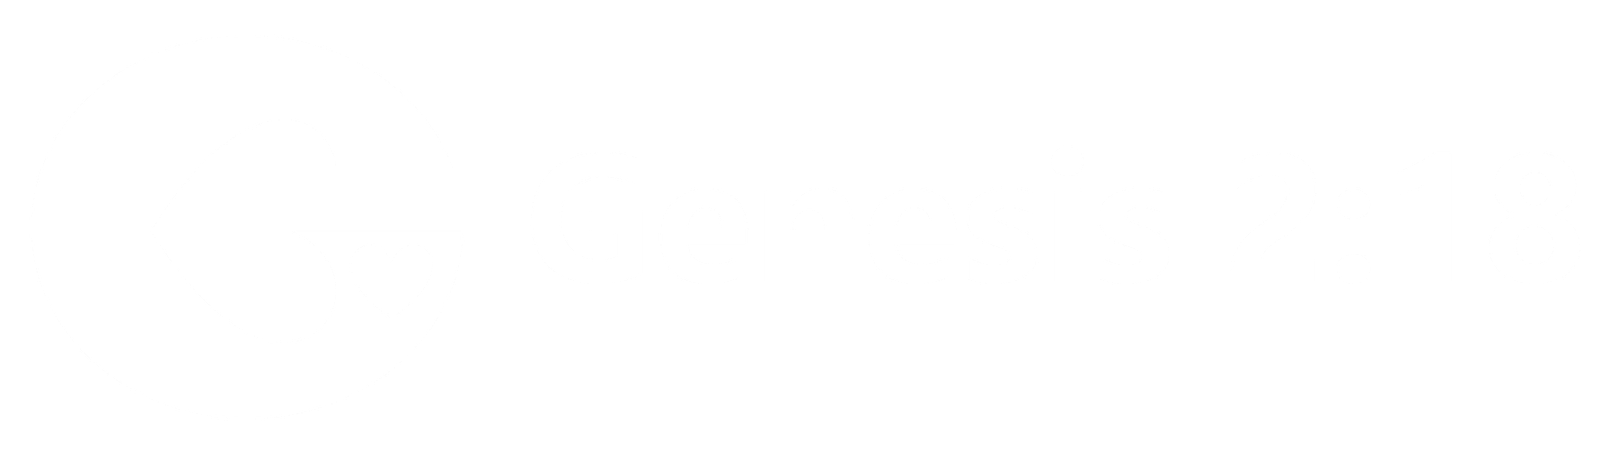 Genesis 2:18